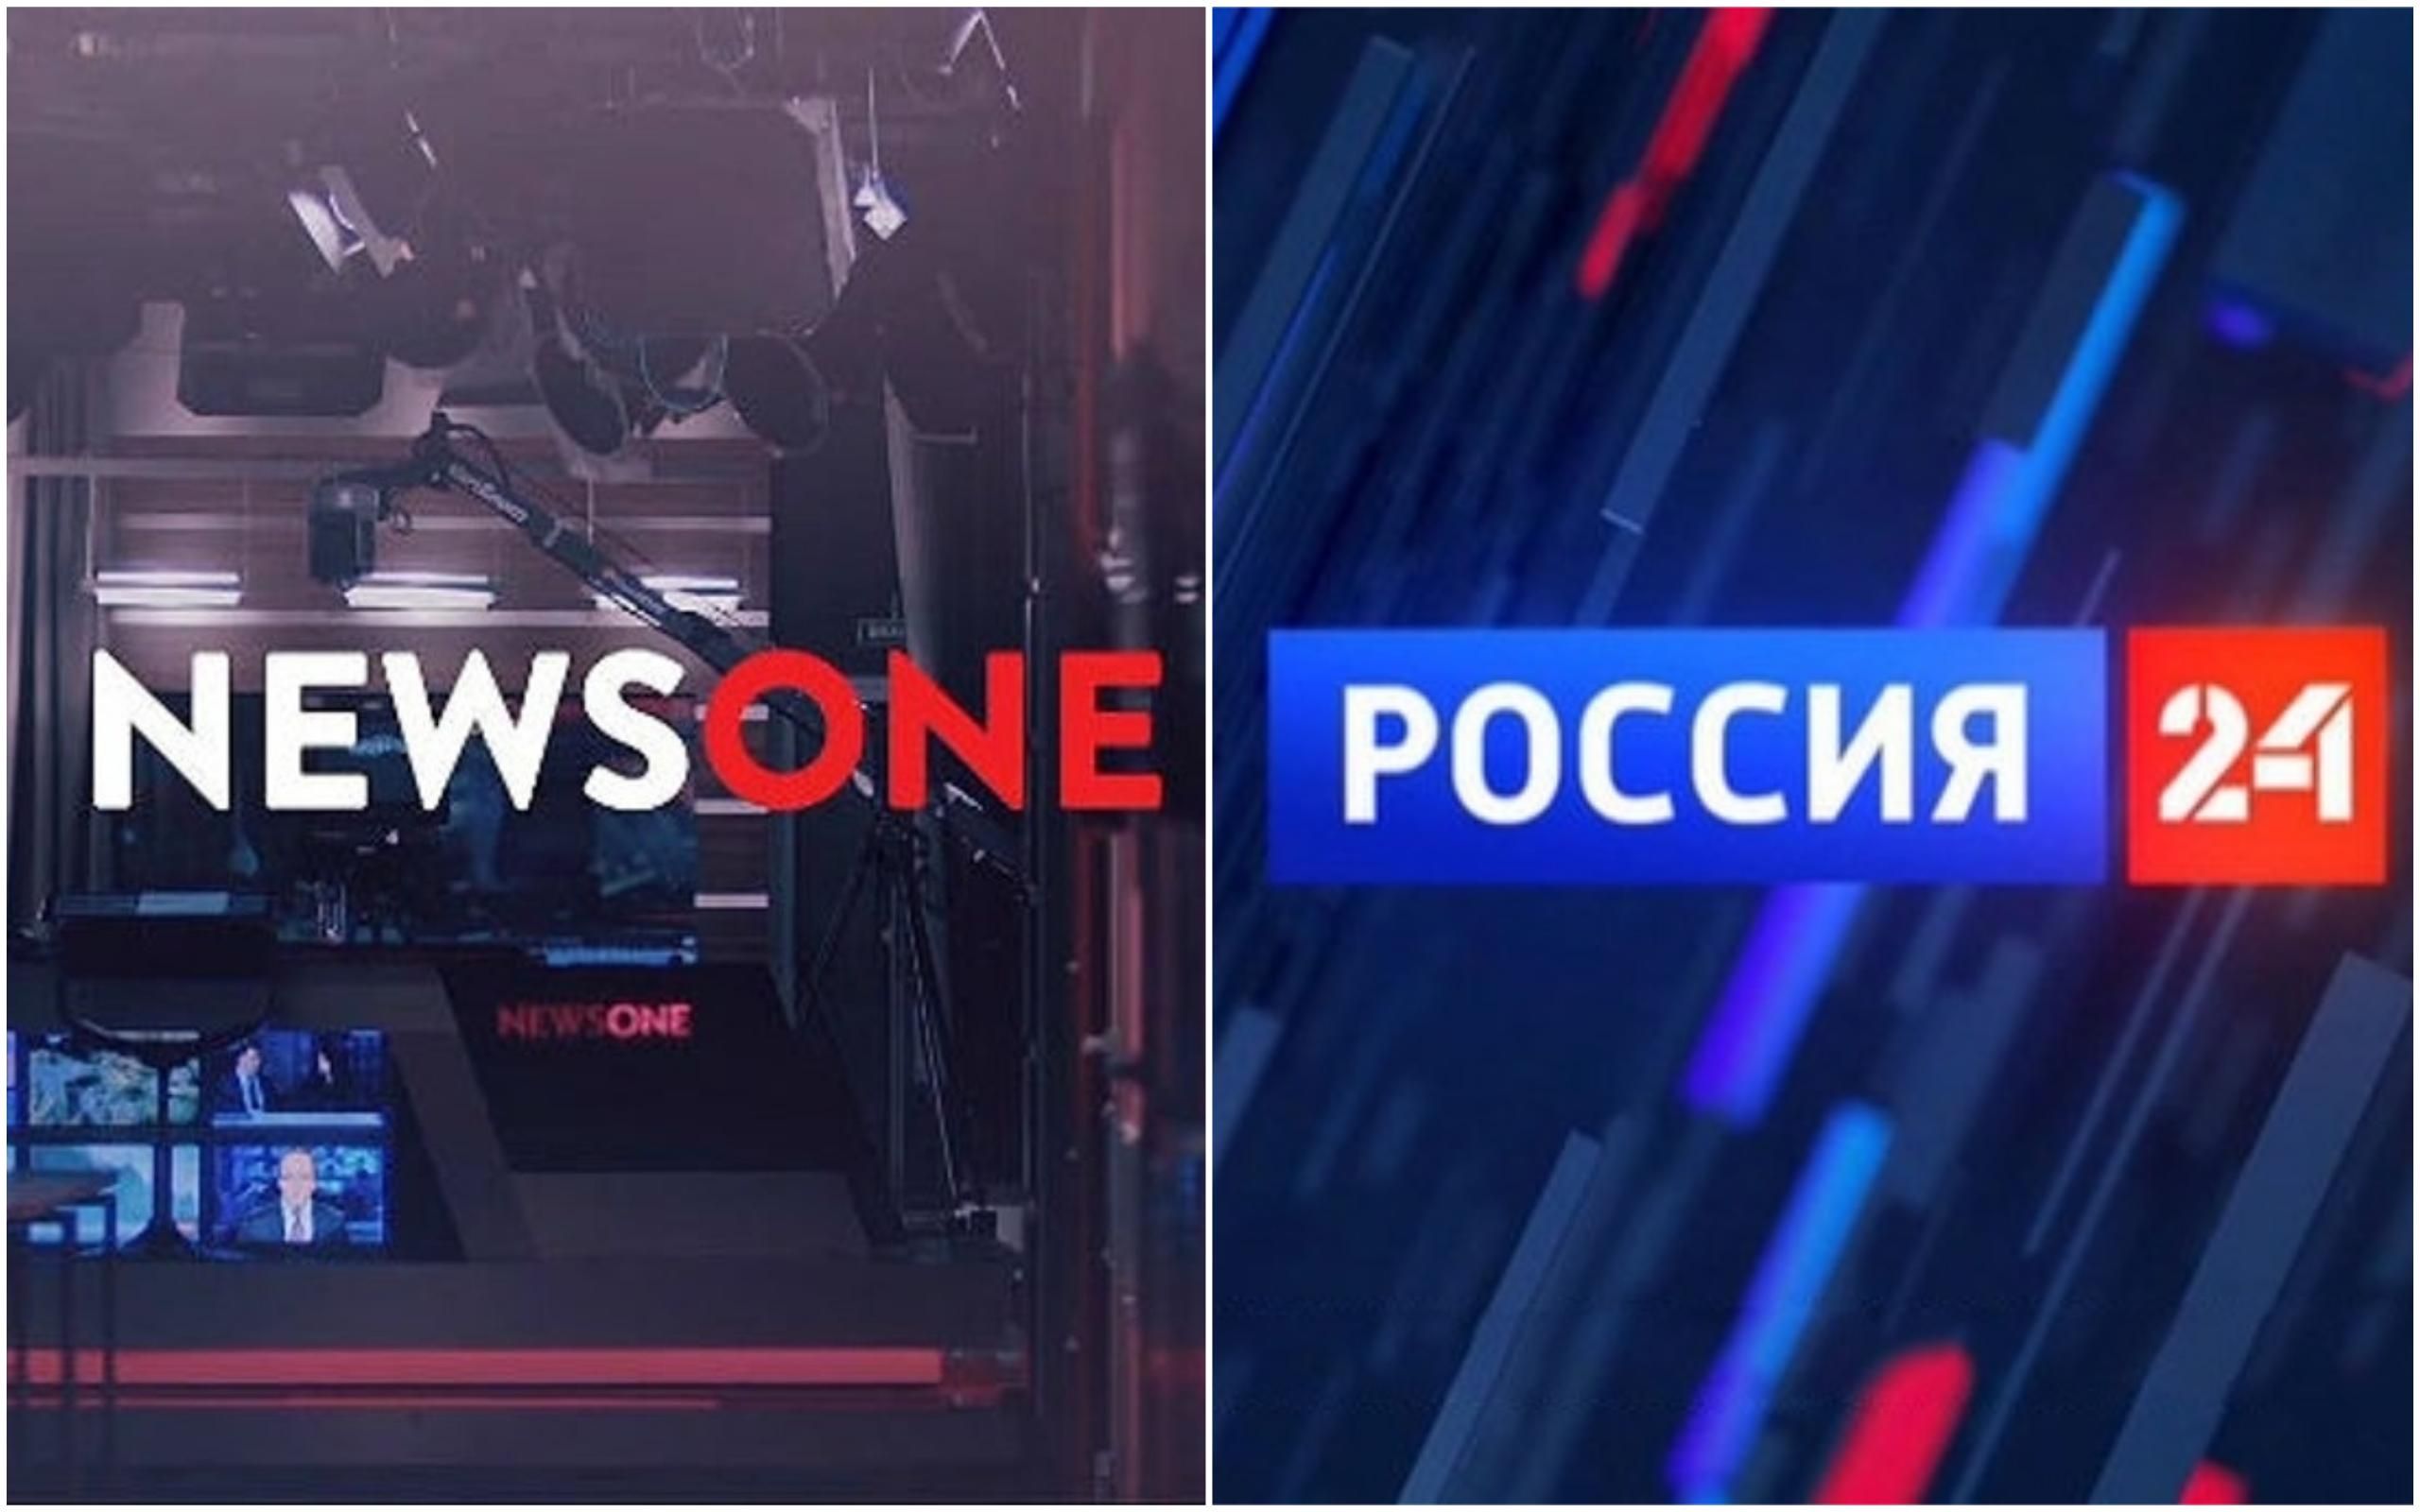 Телеміст Україна-Росія 2019: NewsOne відміняє телеміст з Росія 24